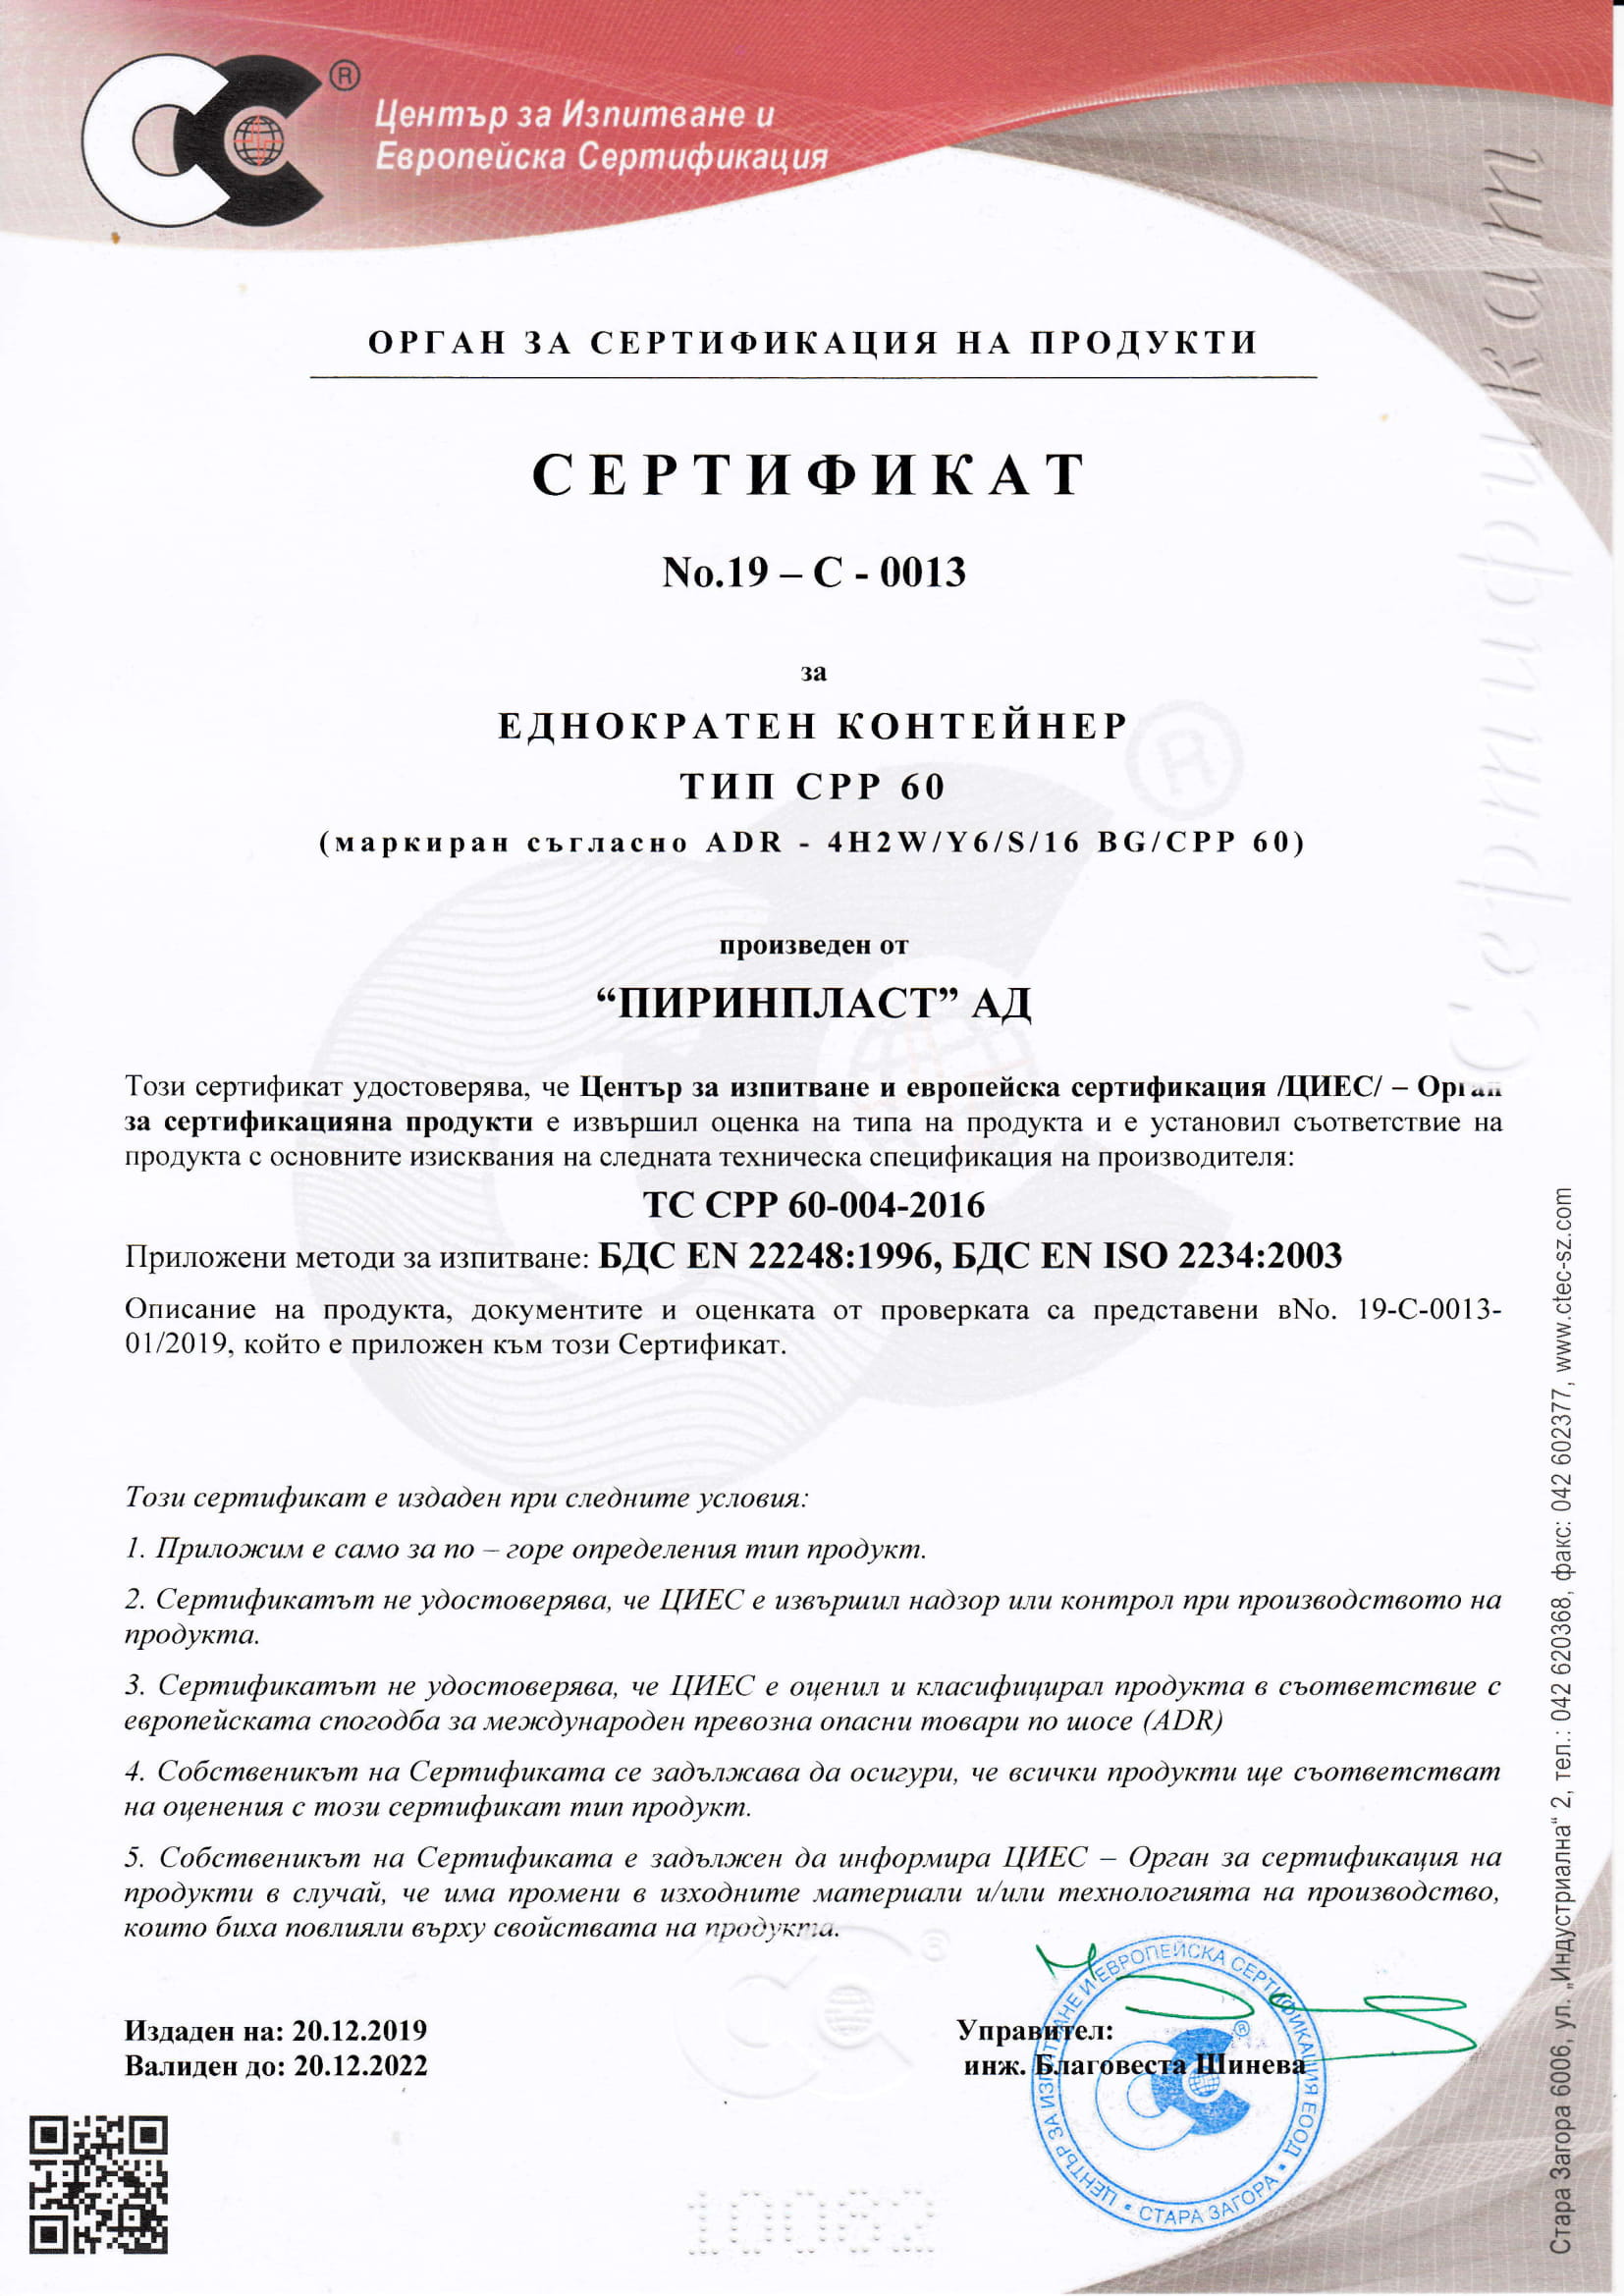 Сртификат СРР 60-1